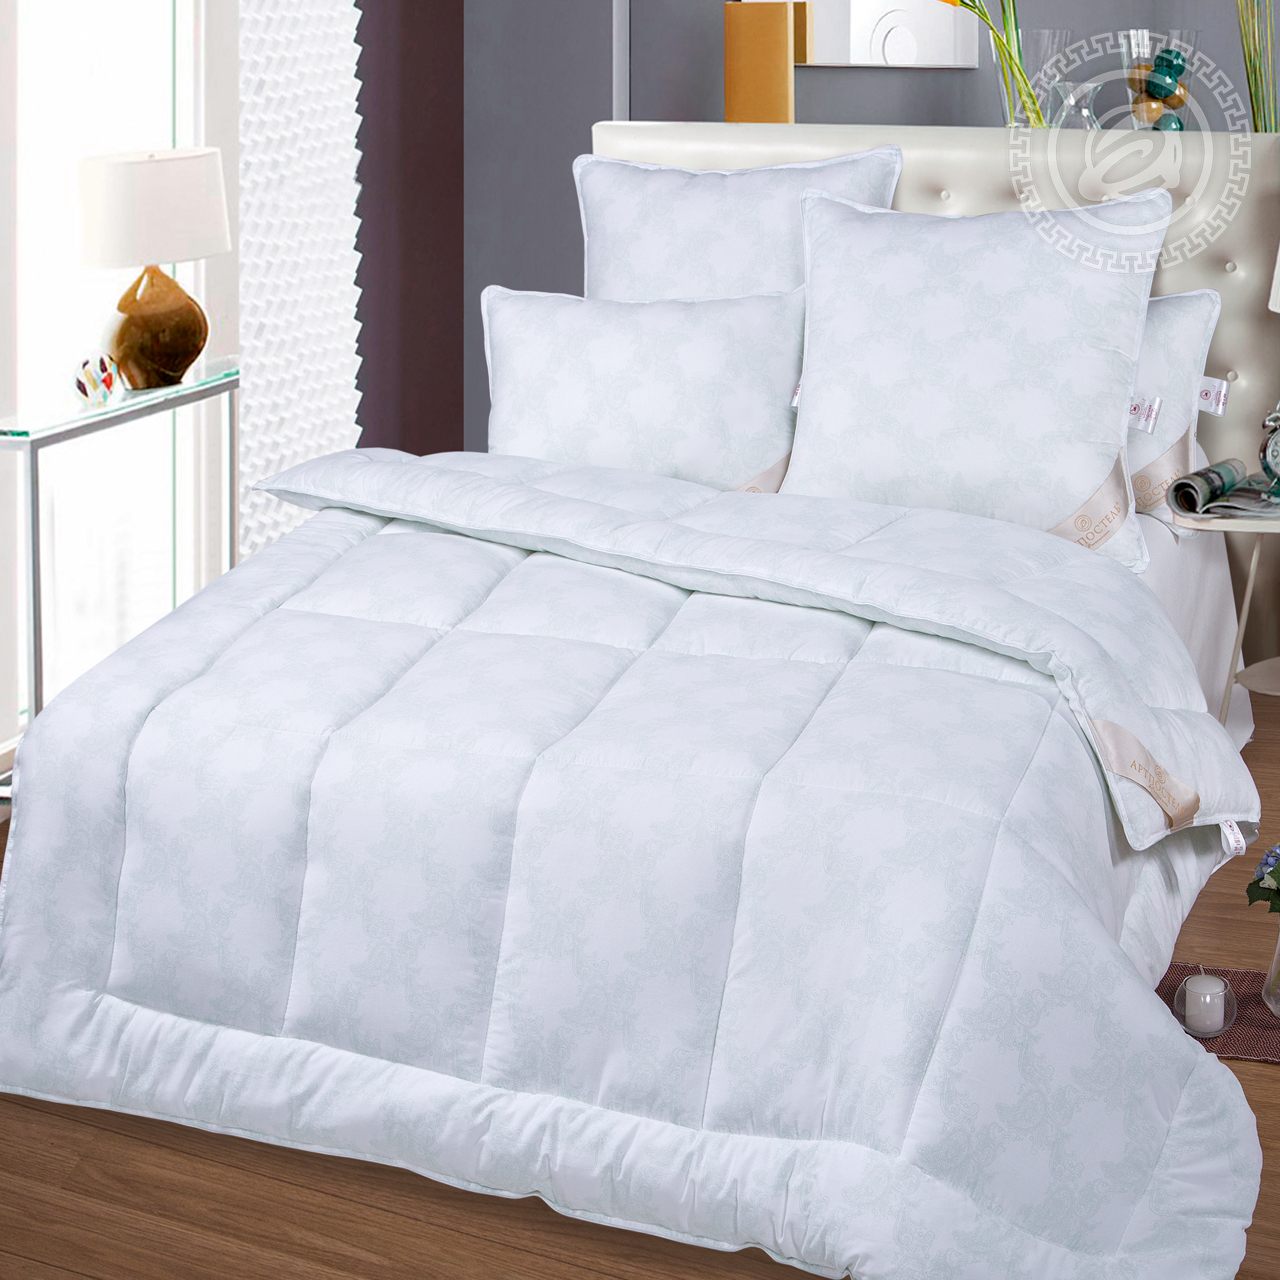 Одеяло Seastar Всесезонное (200х215 см), размер 200х215 см, цвет белый atp417189 Одеяло Seastar Всесезонное (200х215 см) - фото 1